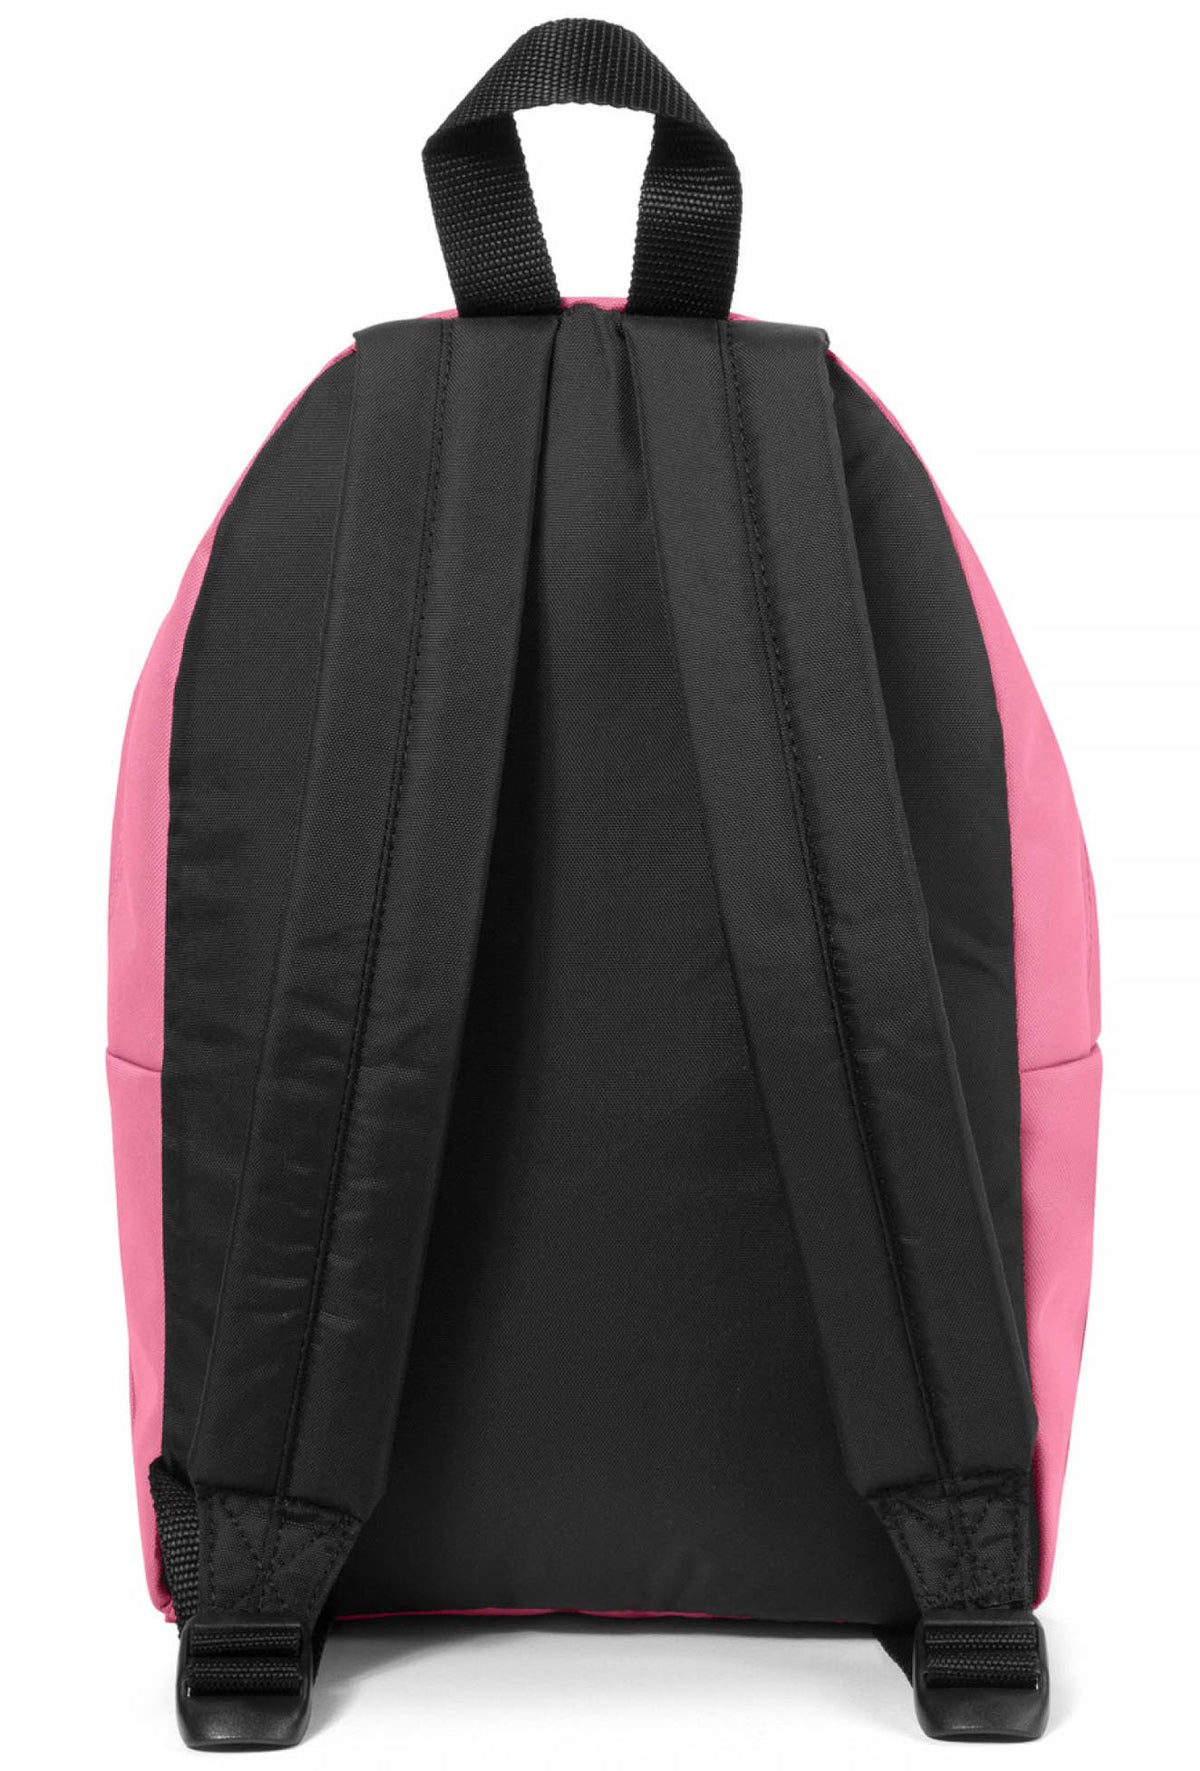 Eastpak Orbit XS Backpack - Playful Pink